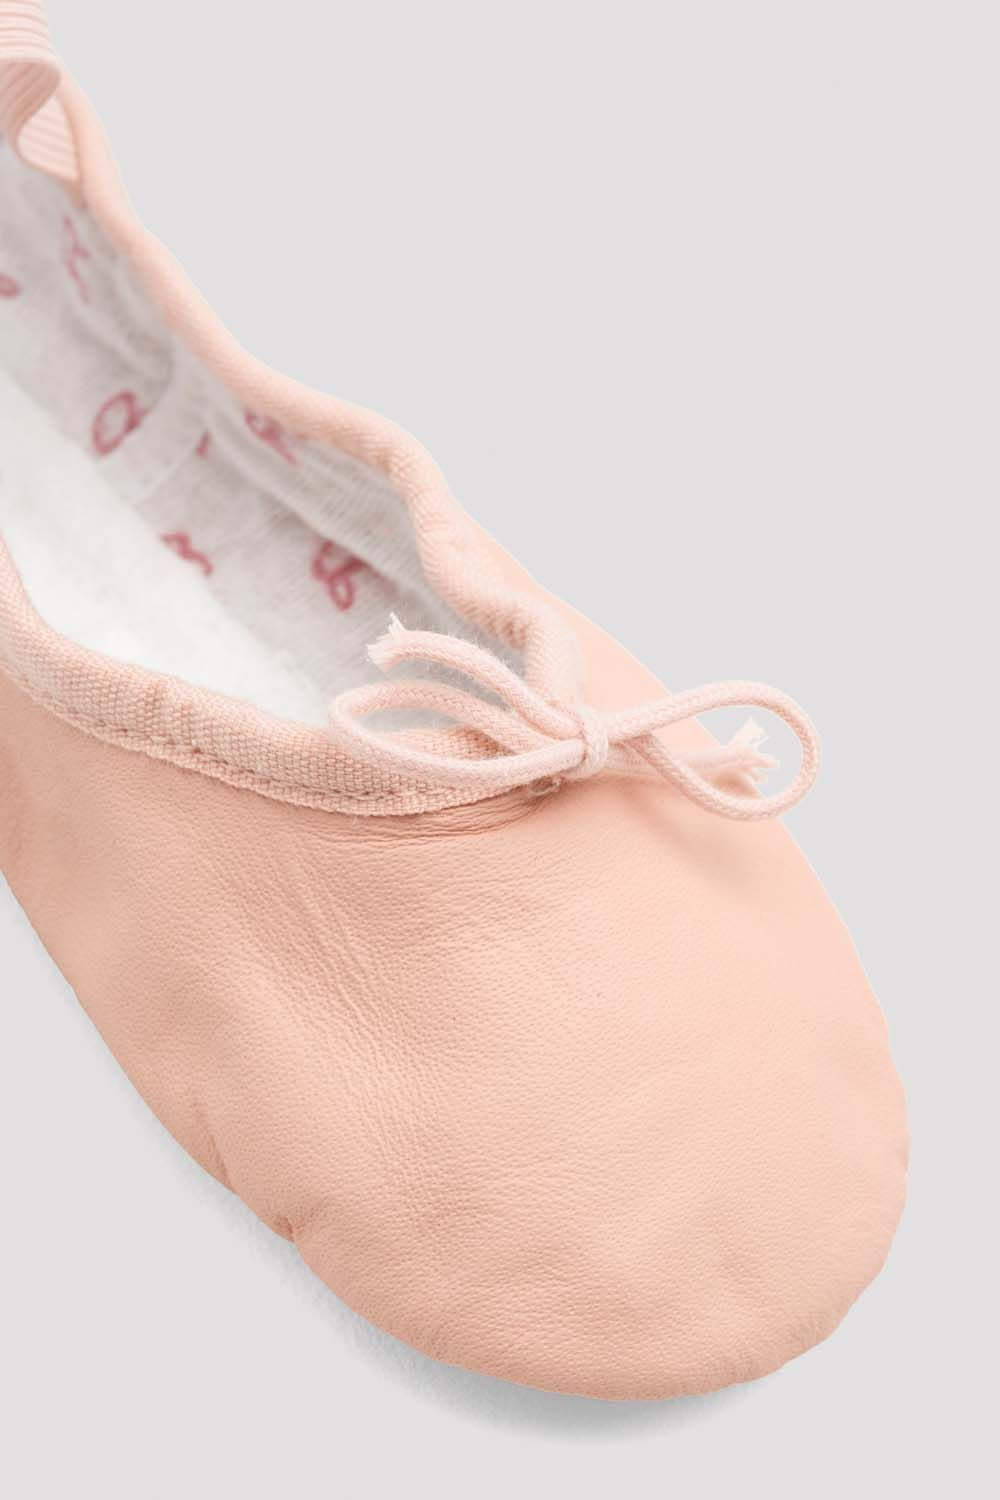 Zapatillas De Ballet Tan Color Rosa Para Niña